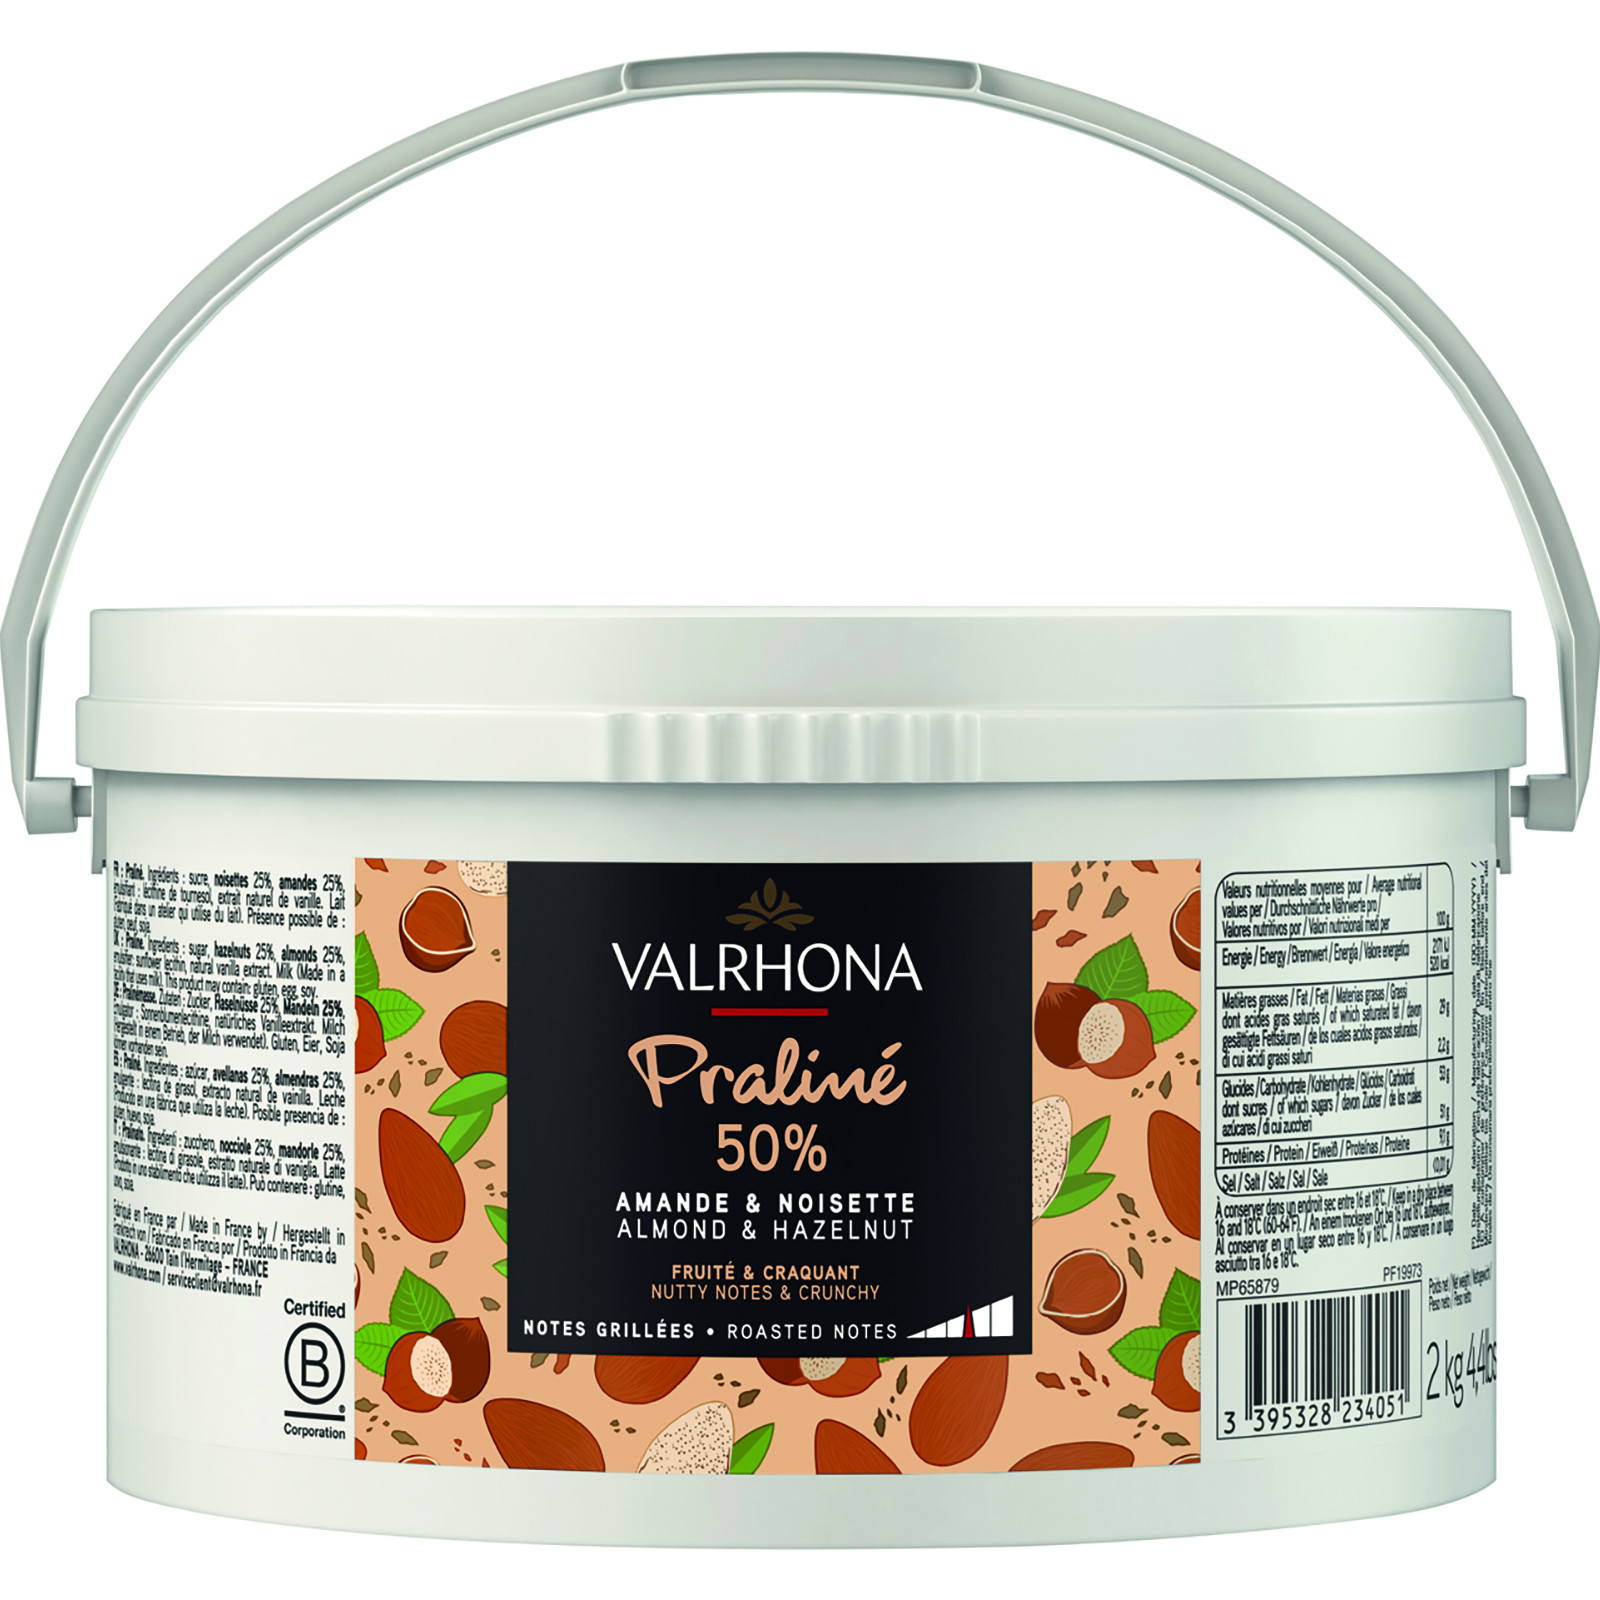 Valrhona - Praliné fruité craquant amande noisette 50% 2 kg